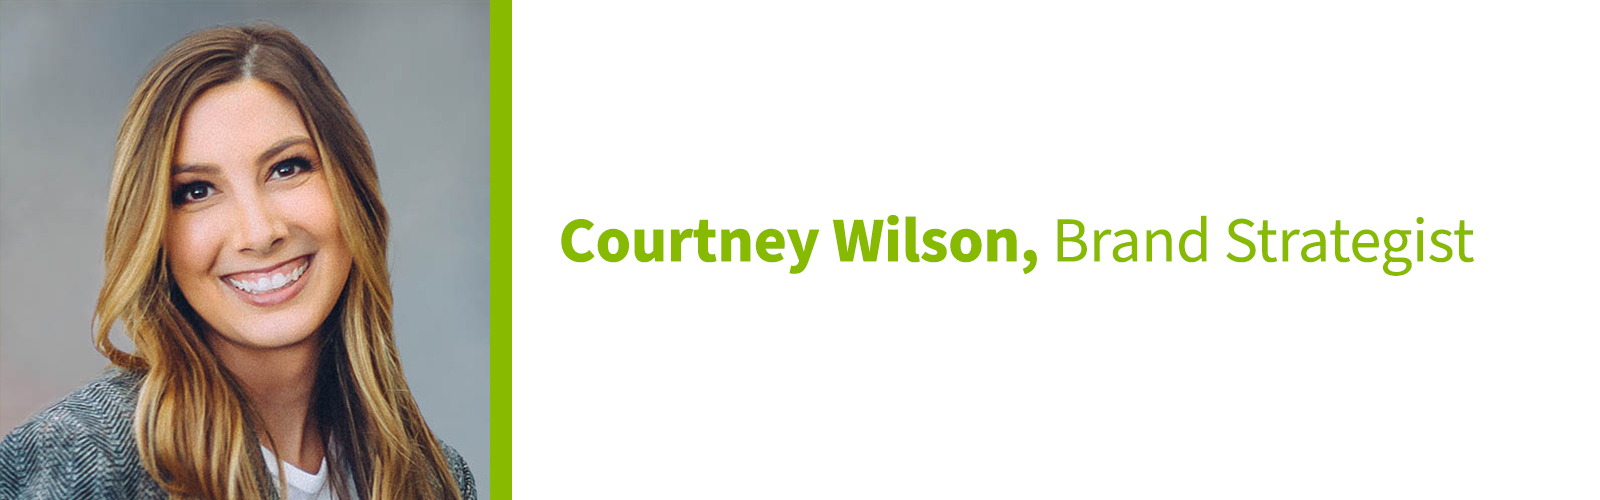 Courtney Wilson, Brand Strategist